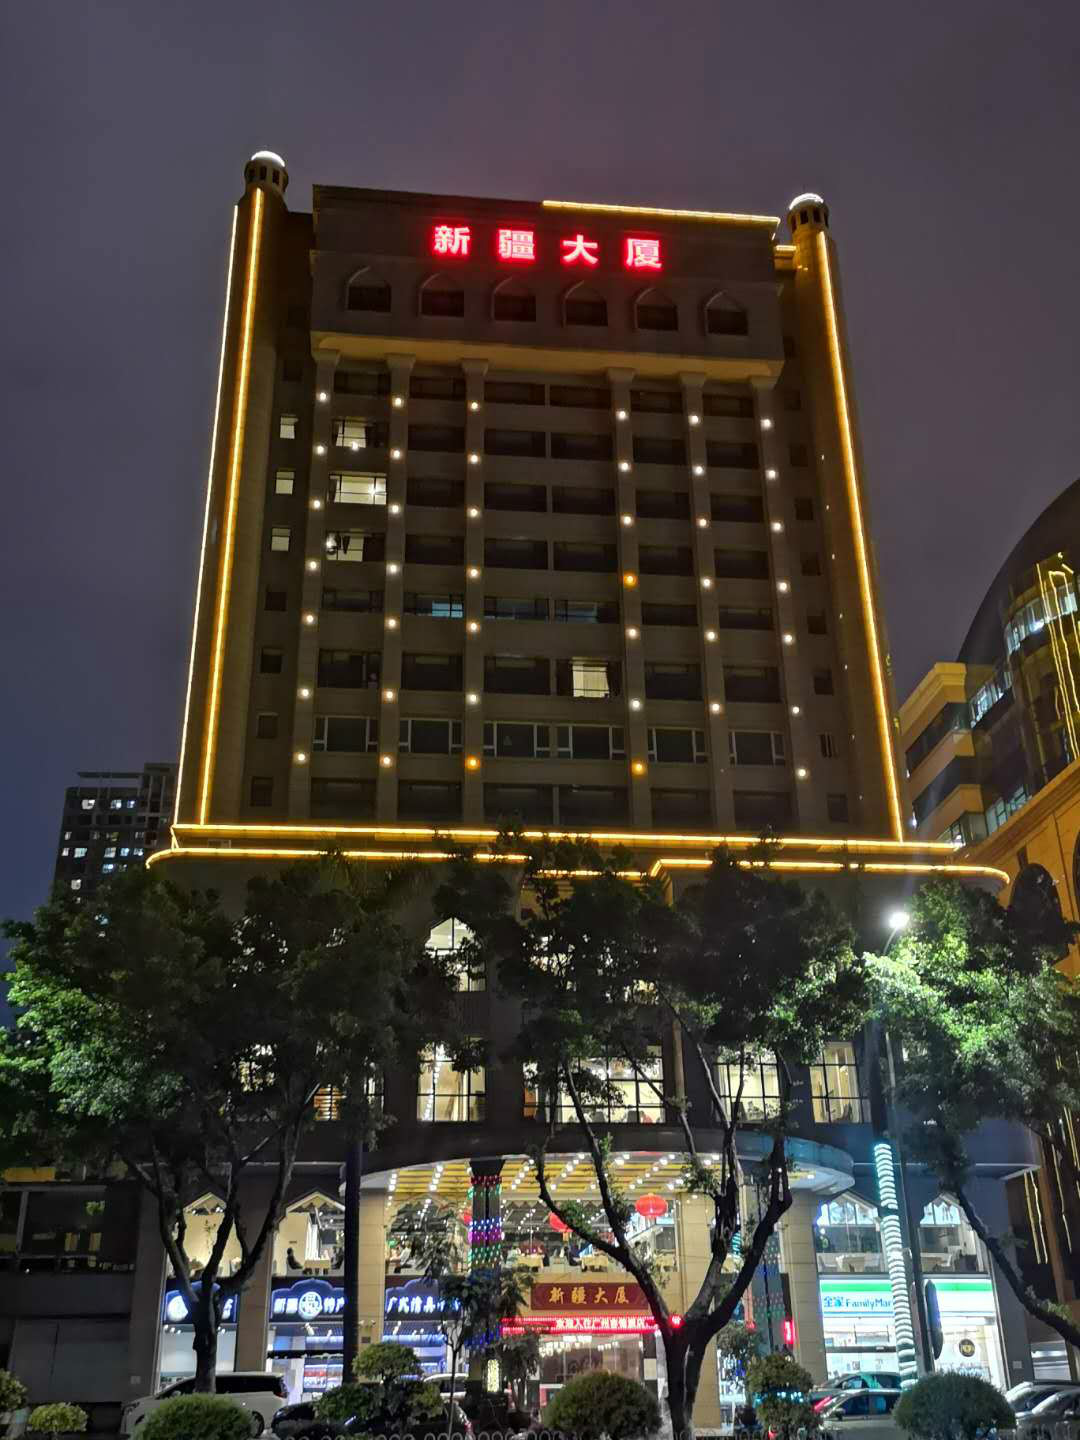 驻广州办事处位于广州市天河区天河北路76号新疆大厦招租项目交易公告